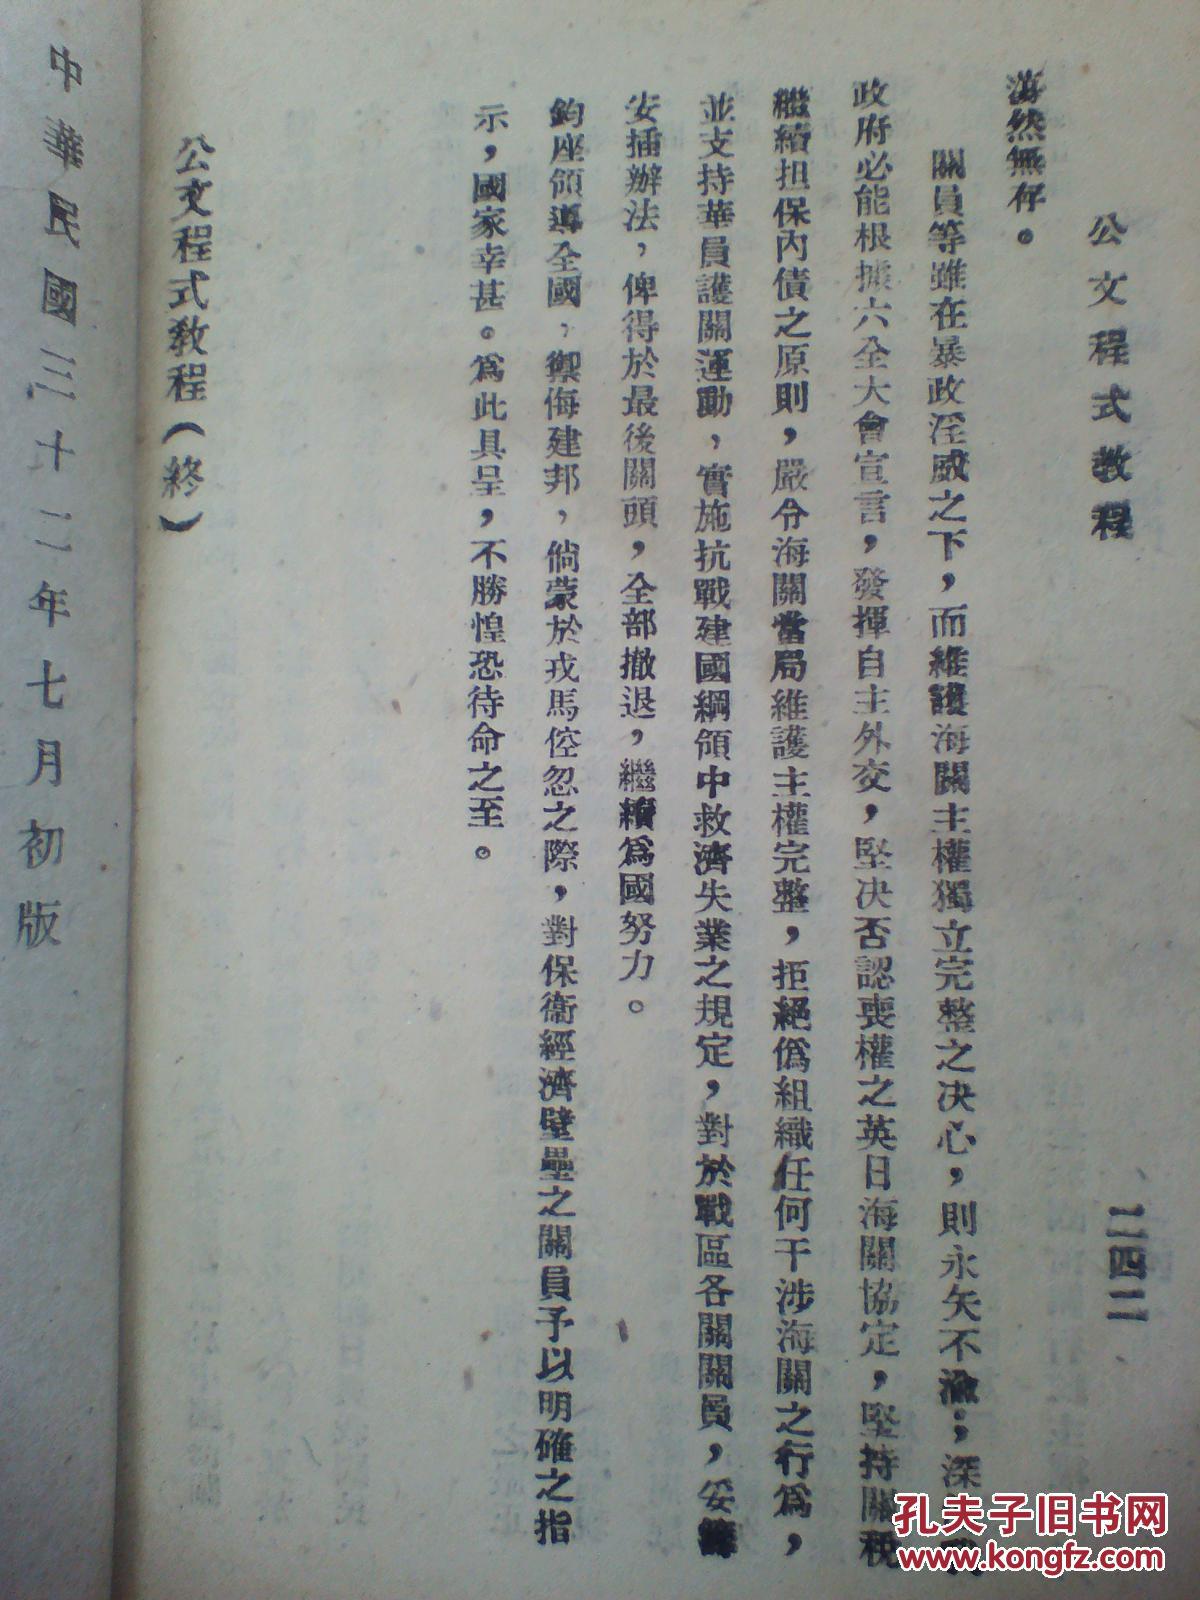 【图】孤本,1943年抗战时期,国民党陆军军需学